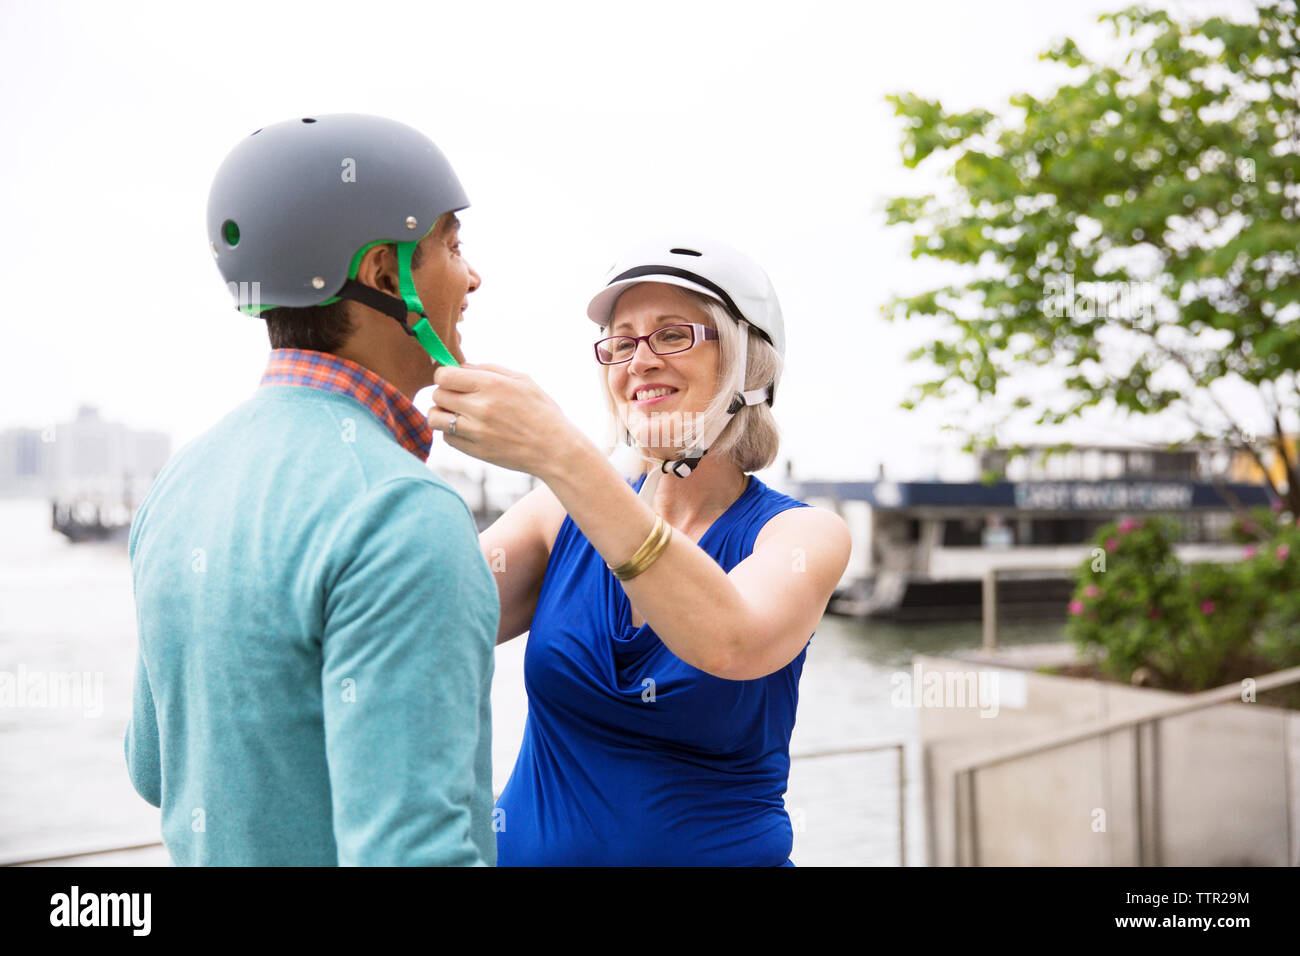 Femme mature d'aider l'homme dans le port de casque de vélo contre le ciel clair Banque D'Images